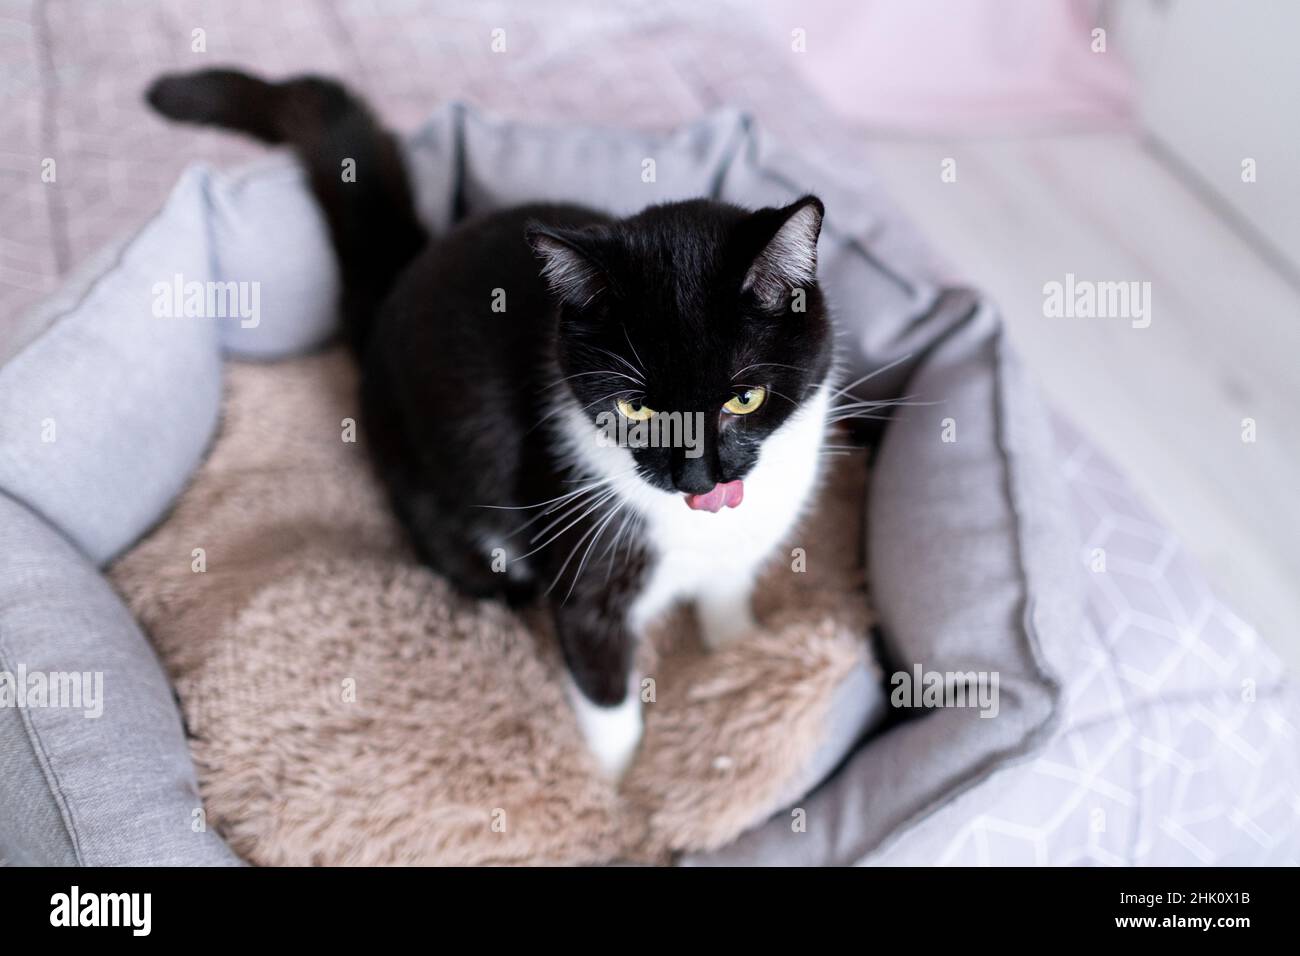 Jeune chat noir et blanc bien entretenu léchant son nez avec sa langue tout en étant assis dans un lit pour animaux, vue du dessus.Produits écologiques pour animaux de compagnie.Attention Banque D'Images